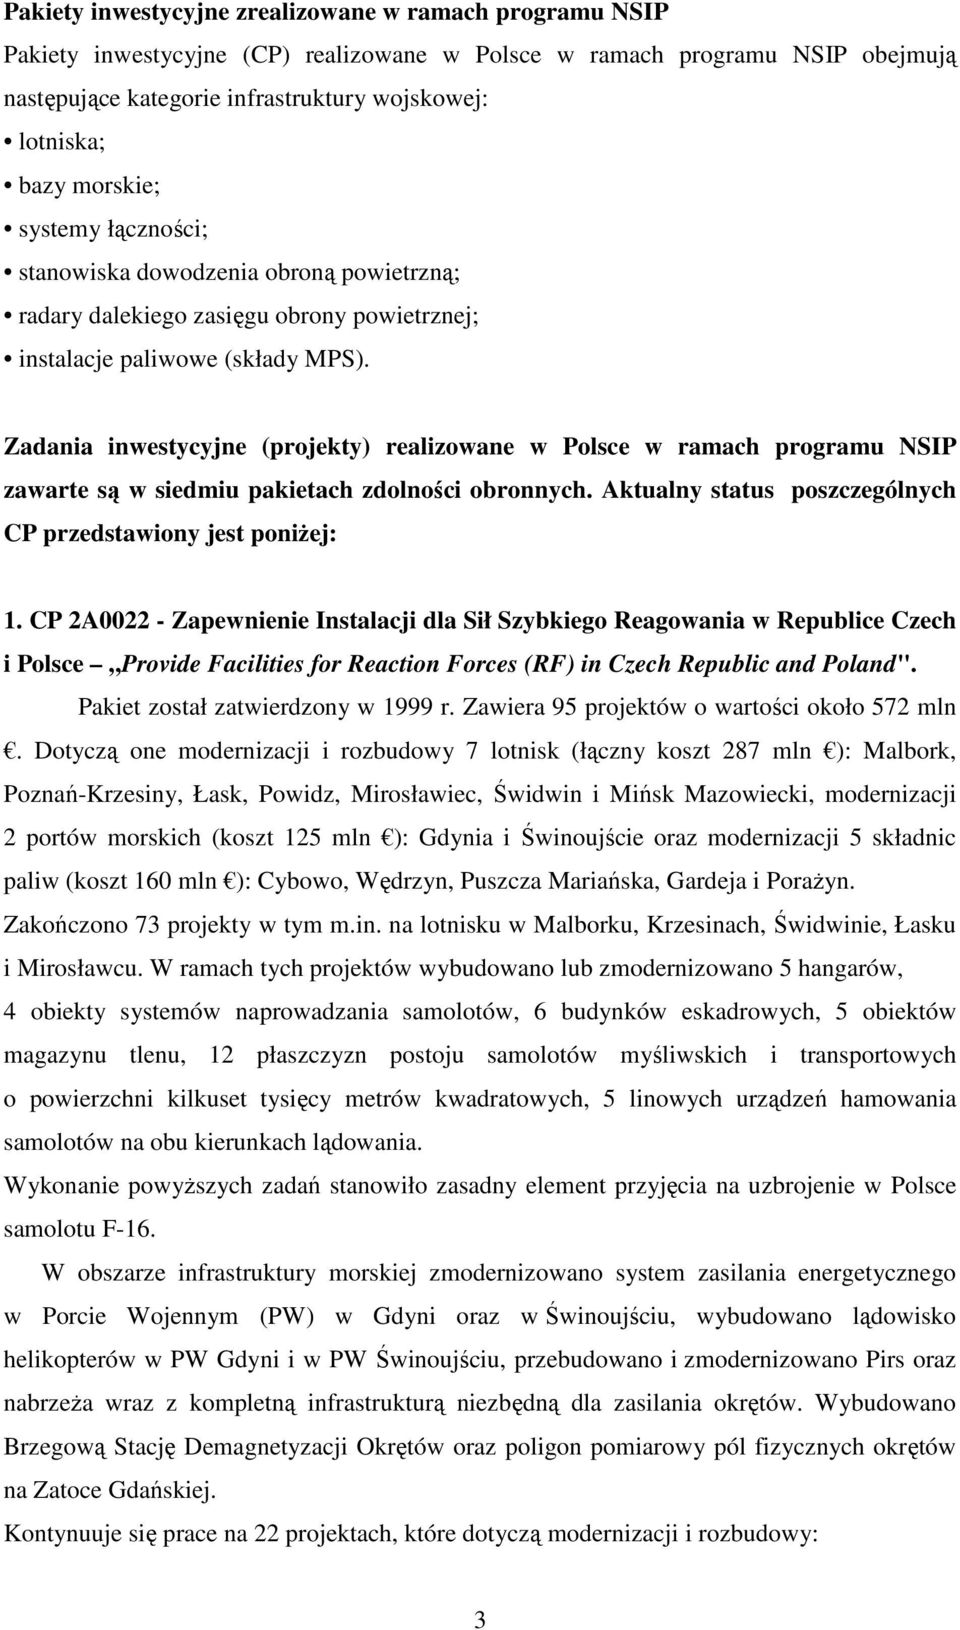 Zadania inwestycyjne (projekty) realizowane w Polsce w ramach programu NSIP zawarte są w siedmiu pakietach zdolności obronnych. Aktualny status poszczególnych CP przedstawiony jest poniŝej: 1.